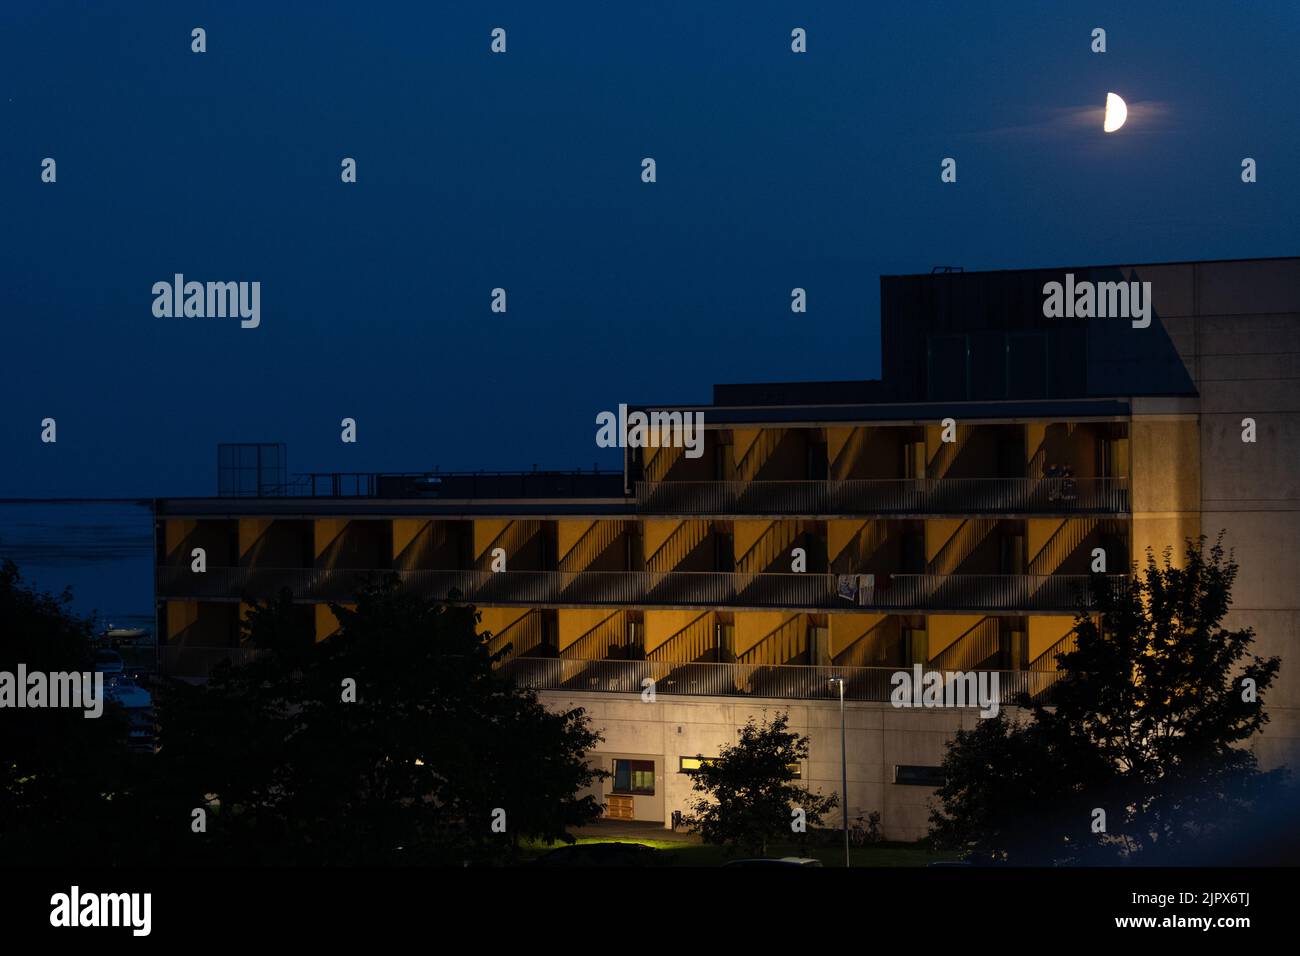 Vue de nuit de l'hôtel Georg OTS Spa ou DE L'HÔTEL GOSPA. Bâtiment de l'hôtel à Saarema la nuit au clair de lune. Banque D'Images